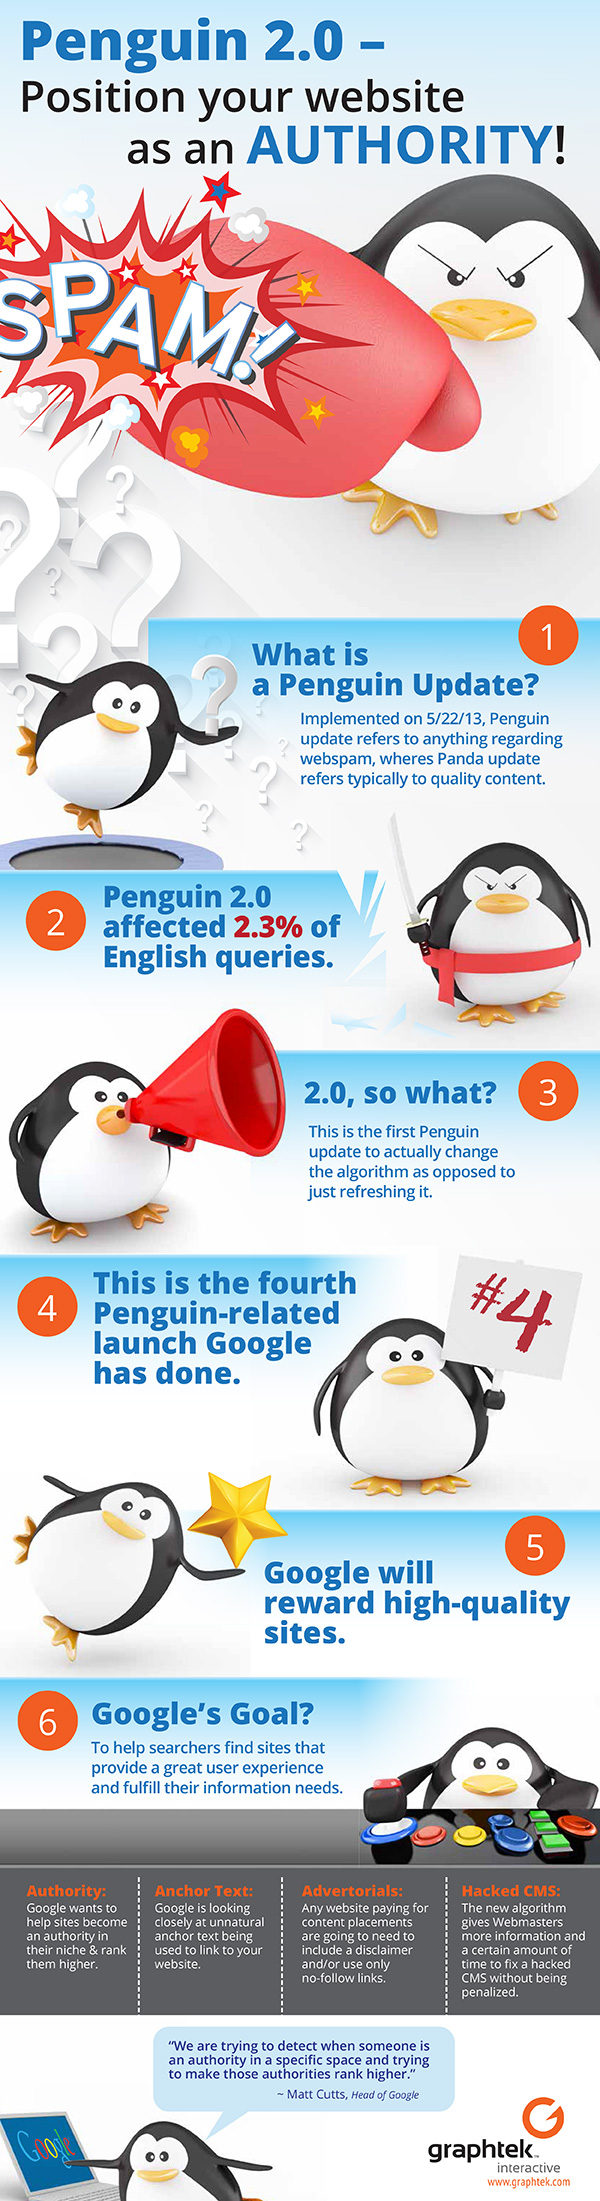 GRA_penguin_infographic_600px.jpg